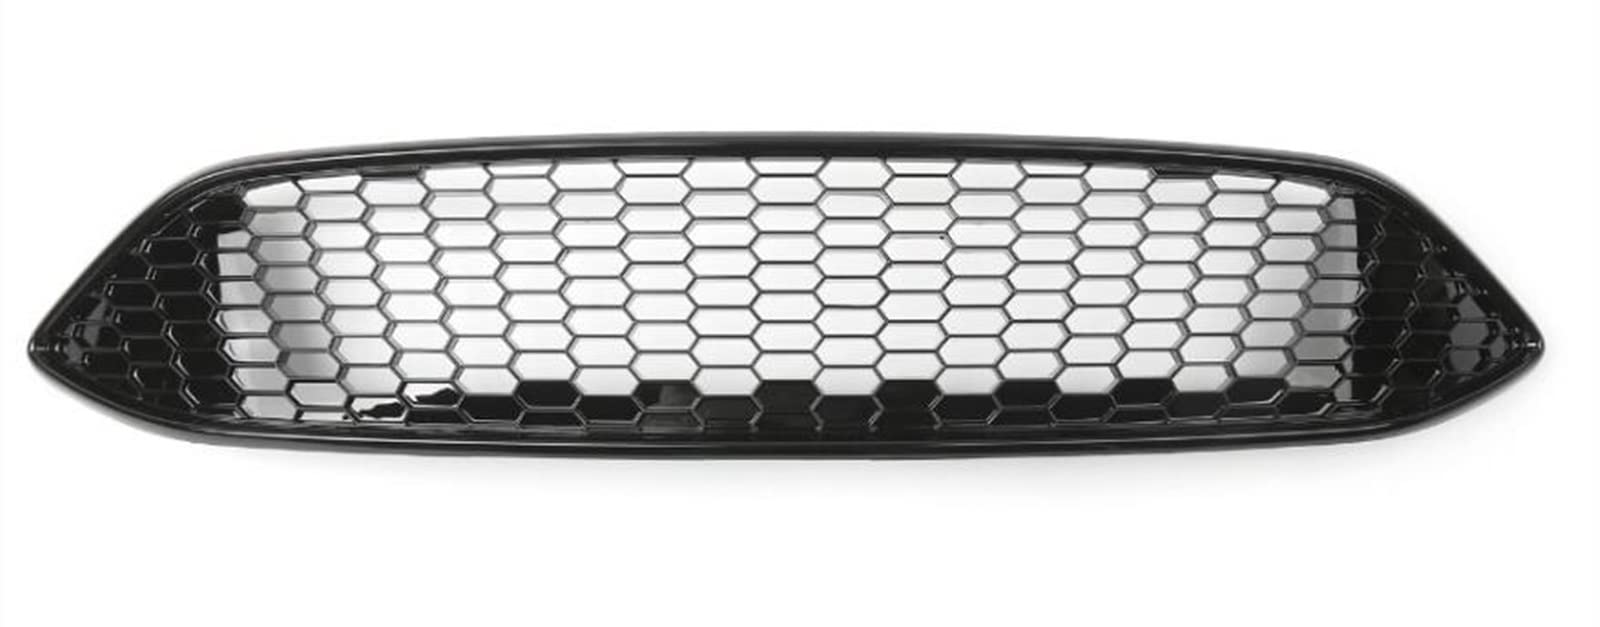 Kühlergrill Streifen Auto Front Upper Bumper Center ABS Mesh Honeycomb Grill für Ford für Focus 2015-2016 ABS Kunststoff Car Styling(Schwarz glänzend) von DZSYOHFS